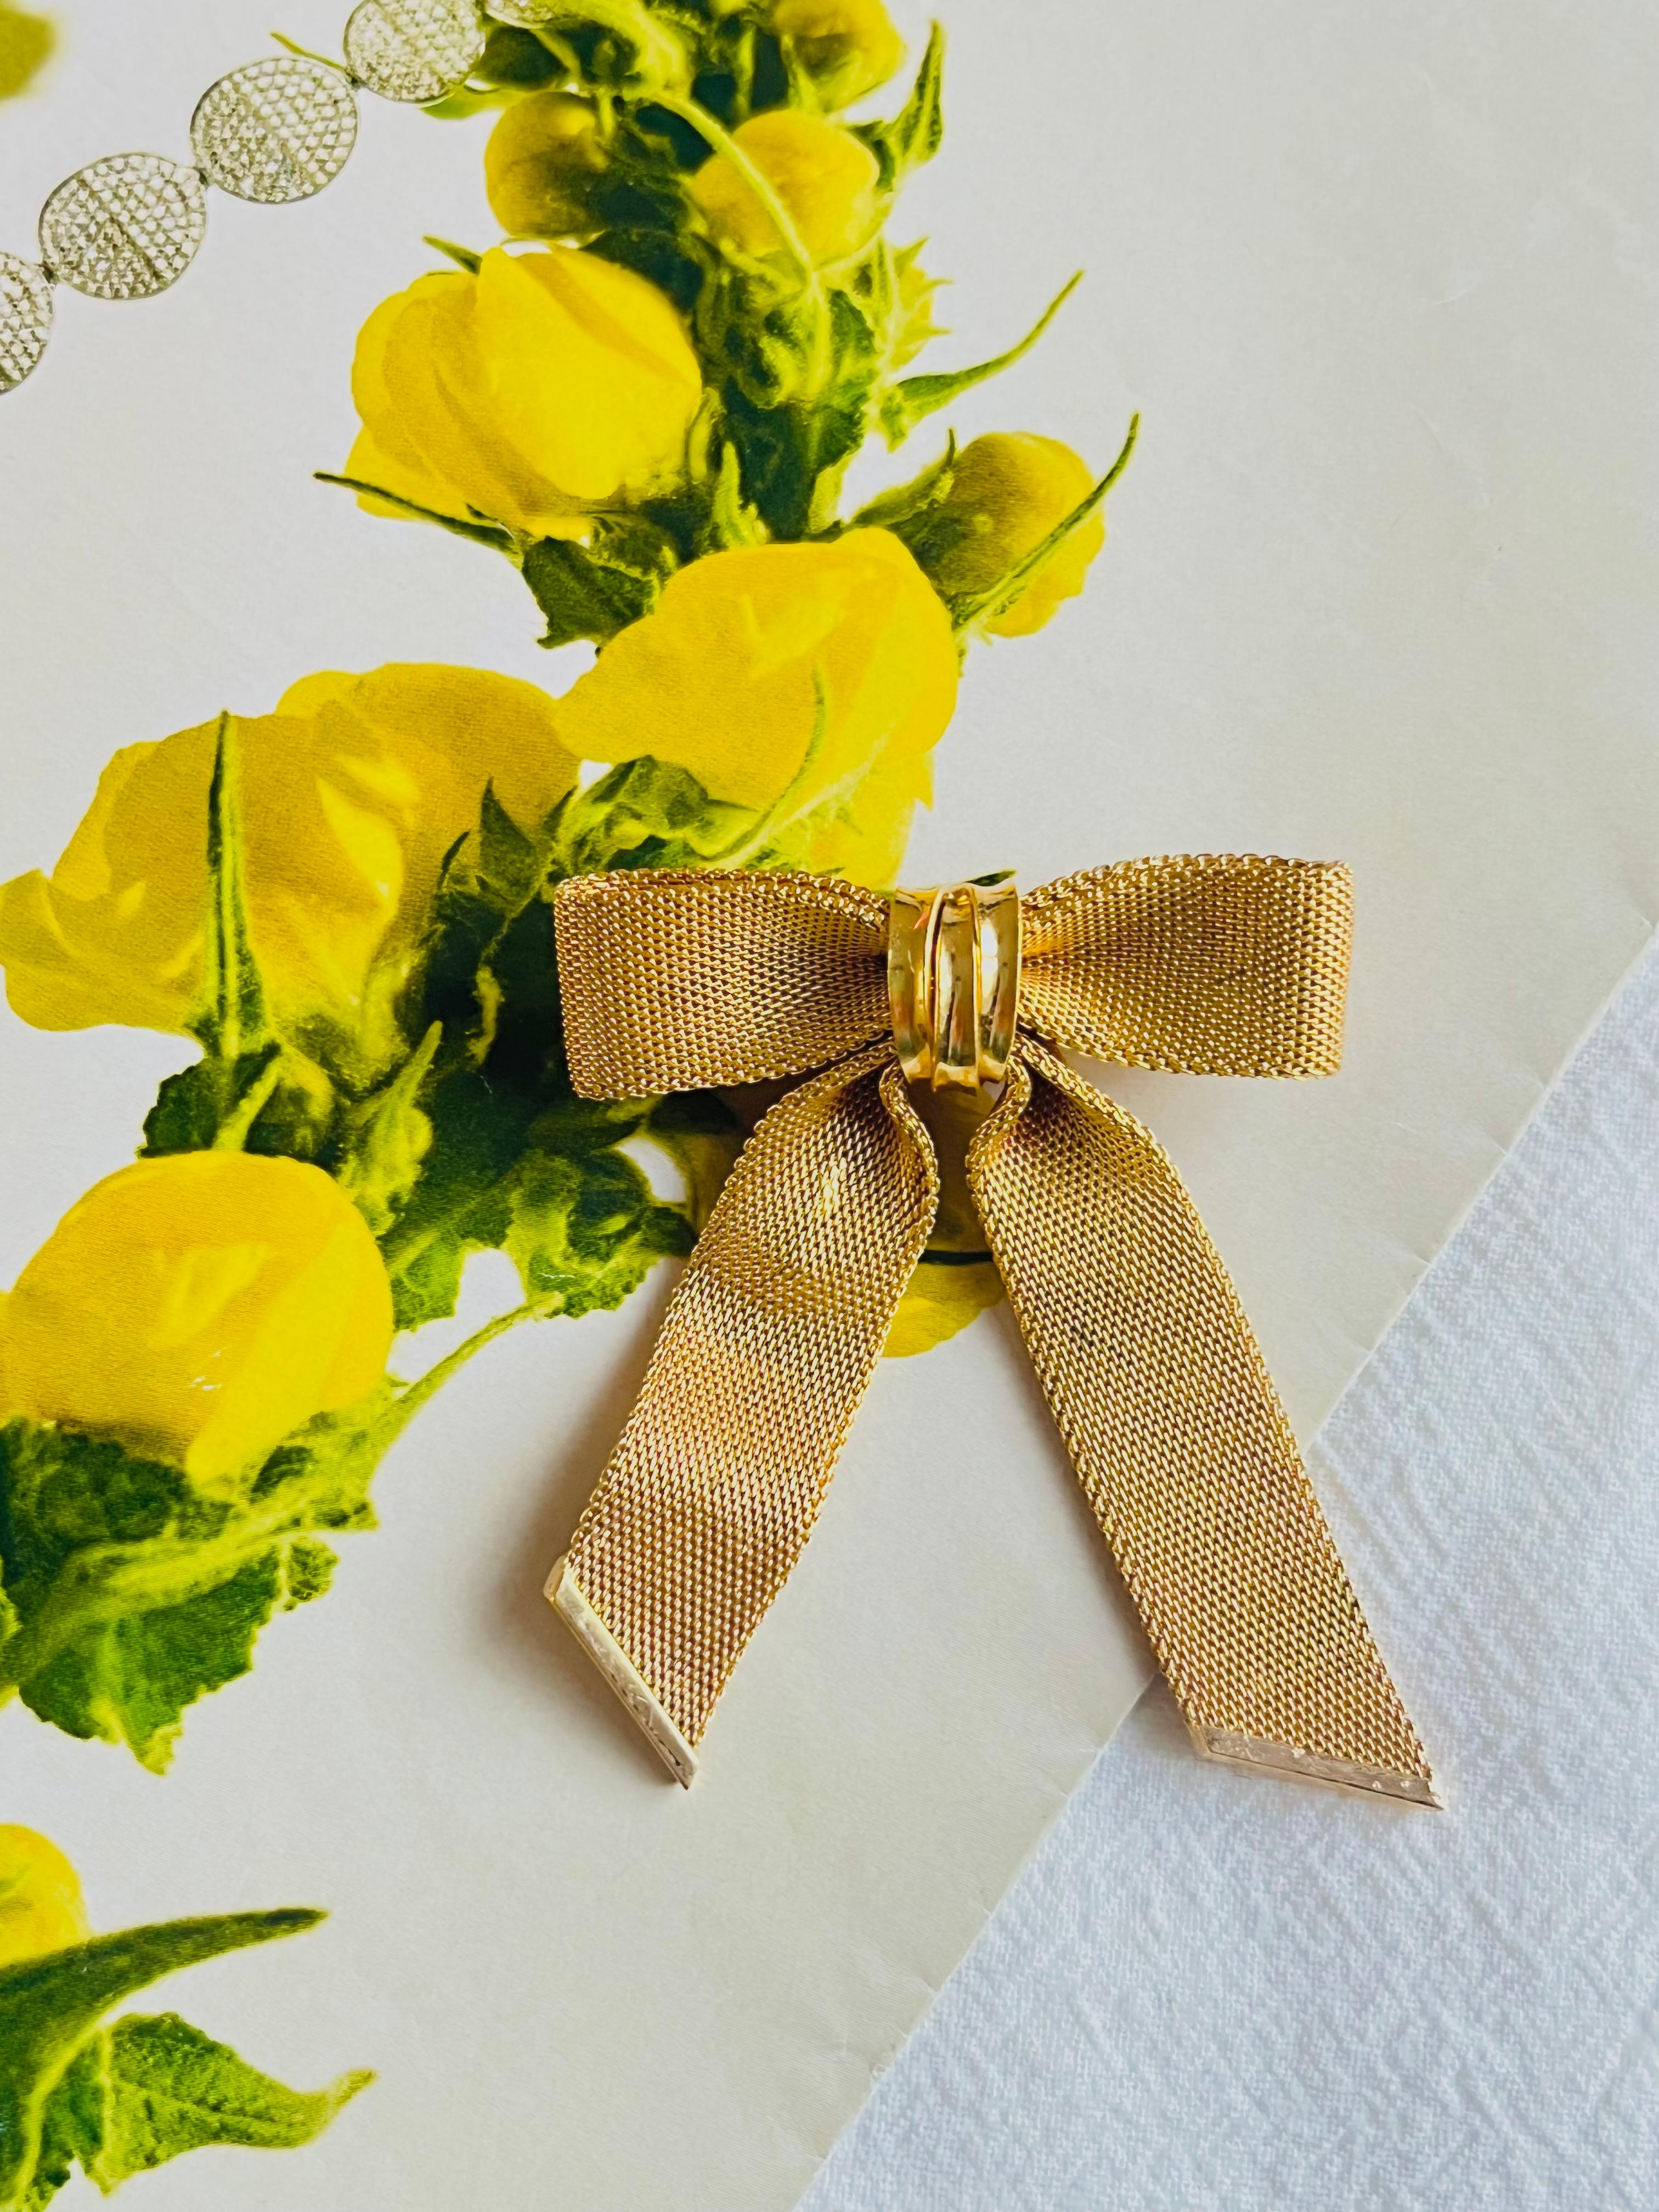 Christian Dior 1972 Vintage Large Bow Ribbon Butterfly Mesh Elegant Brooch, Gold Tone

Très bon état. Pas de perte de couleur, mais de légères taches sombres, à peine perceptibles. 100% authentique.

Une pièce unique. Broche stylisée plaquée